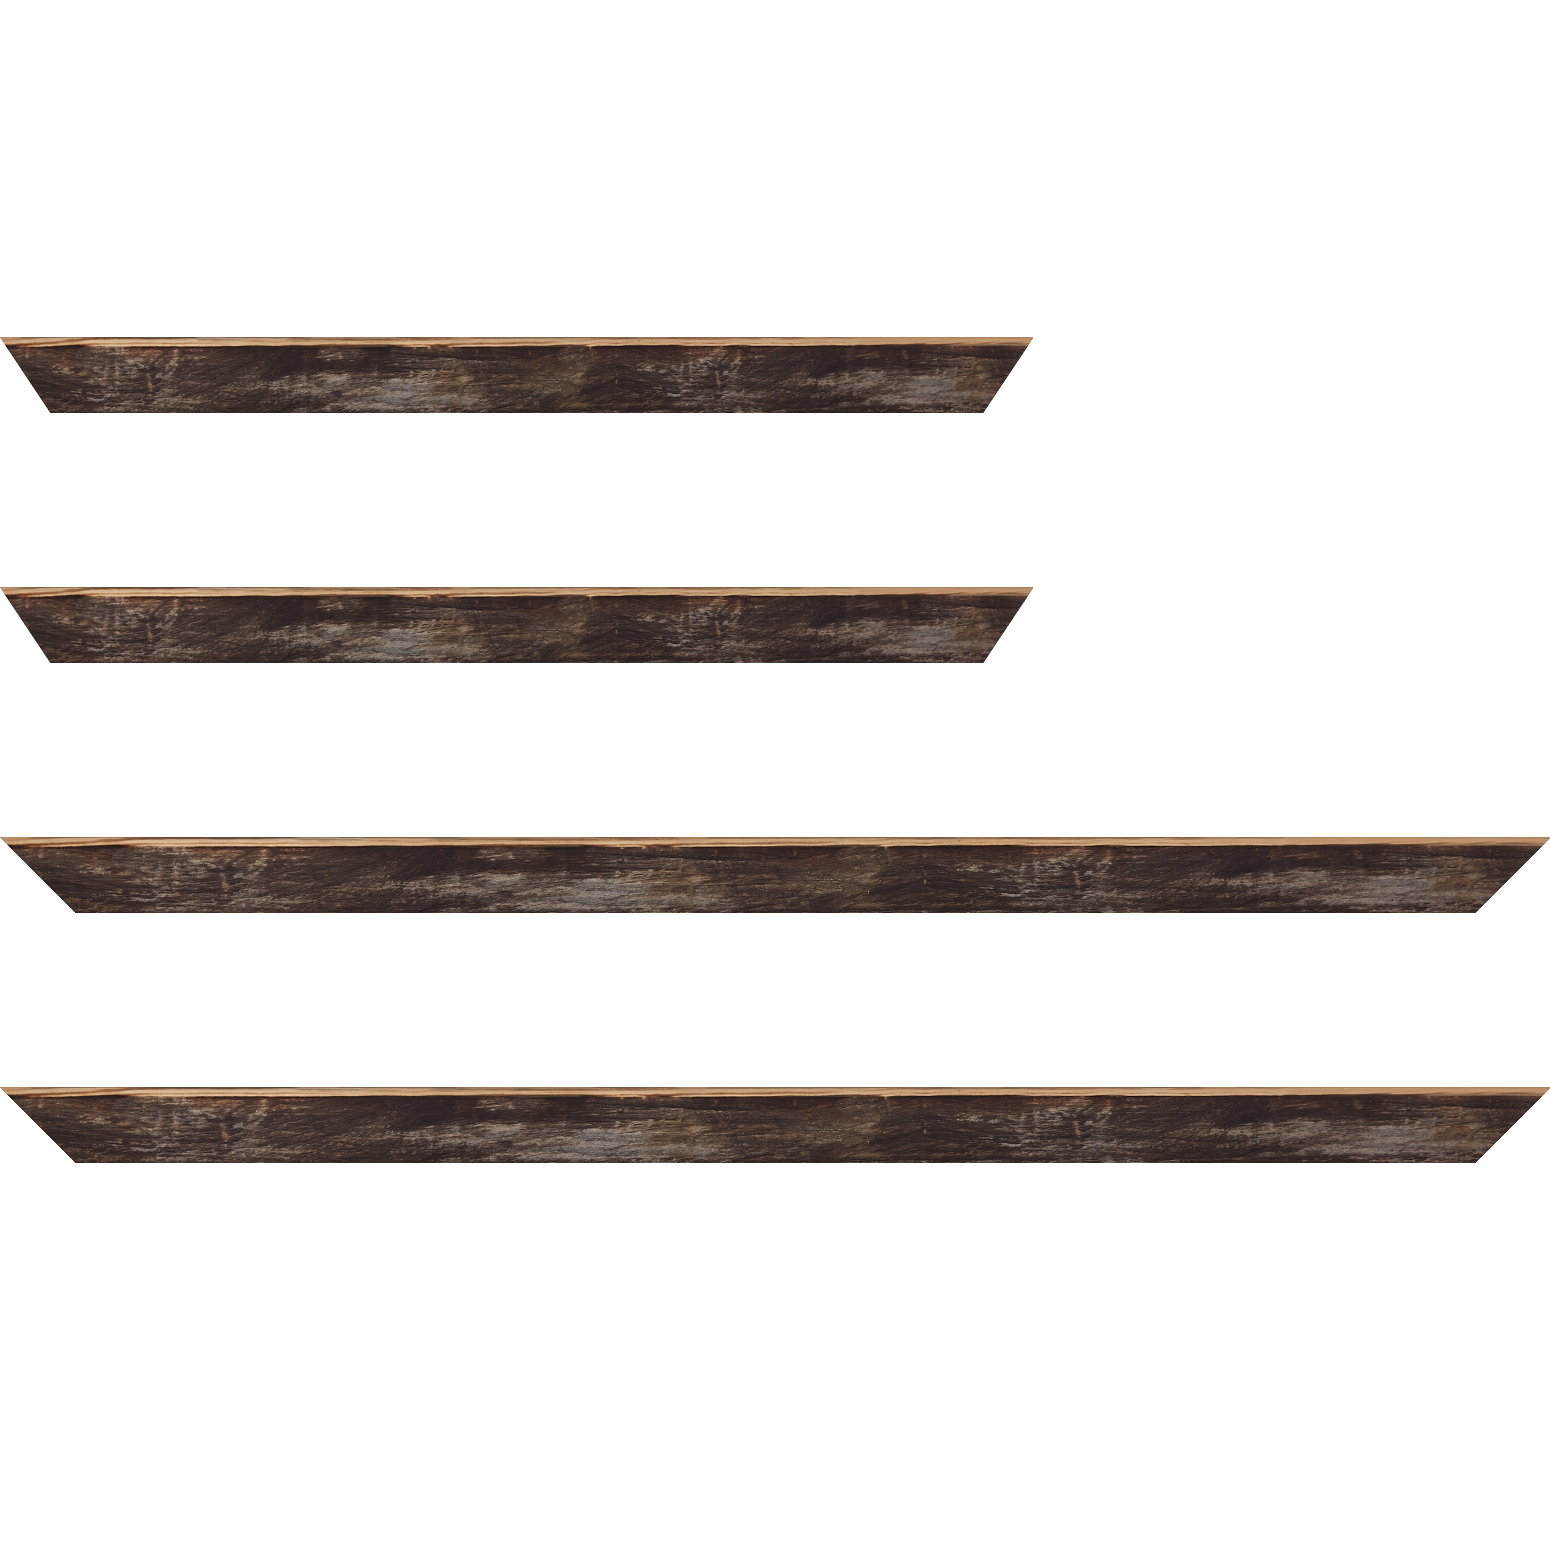 Baguette bois profil arrondi en pente plongeant largeur 2.4cm couleur noir ébène effet ressuyé, angle du cadre extérieur filet naturel - 28x34